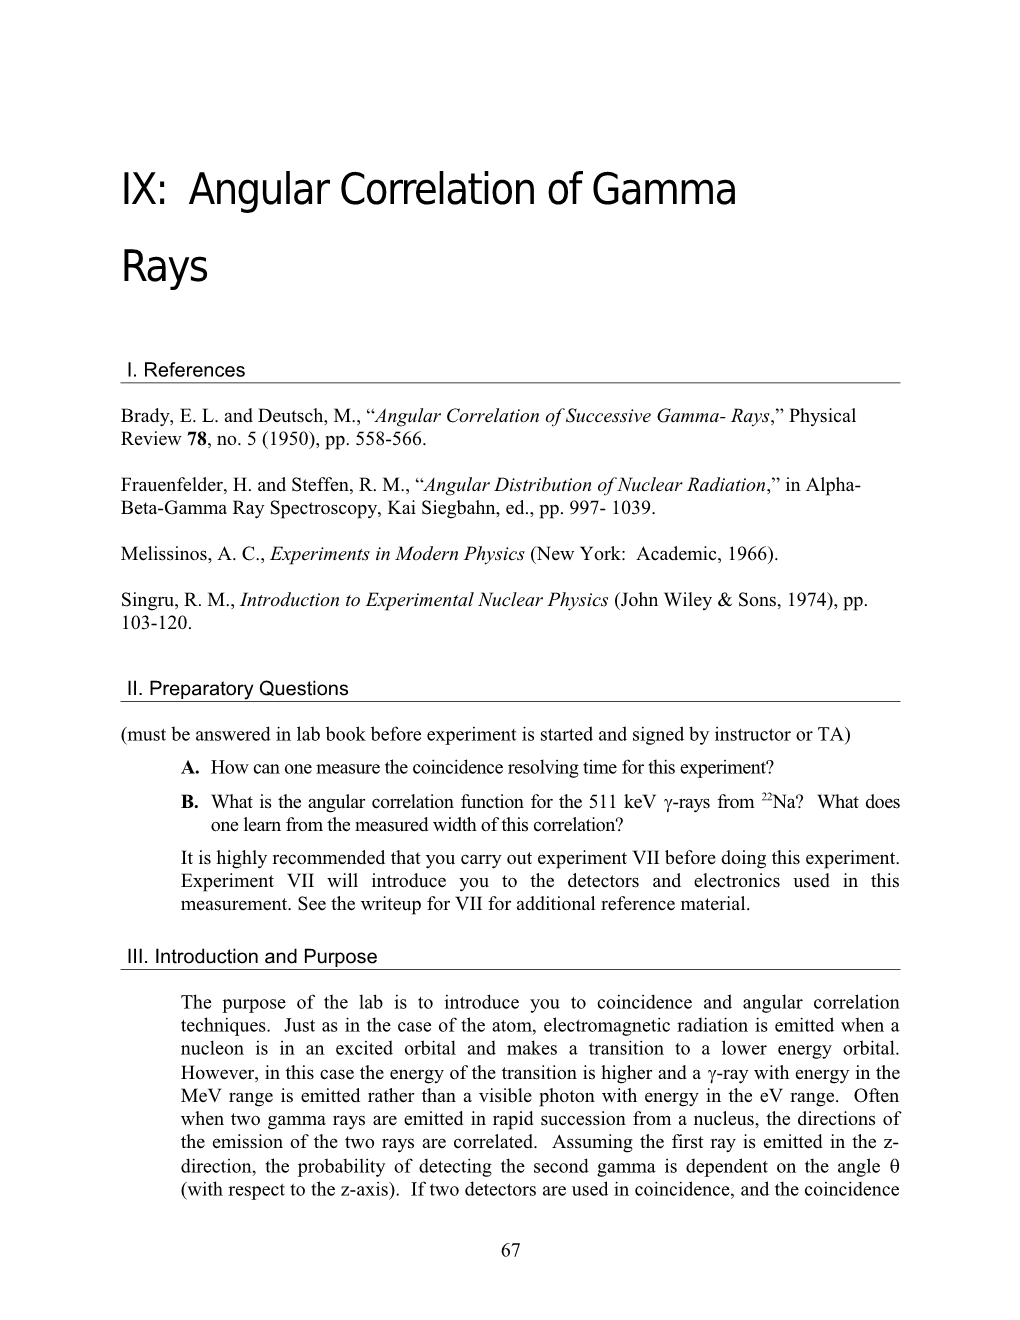 IX Gamma-Gamma Angular Correlation